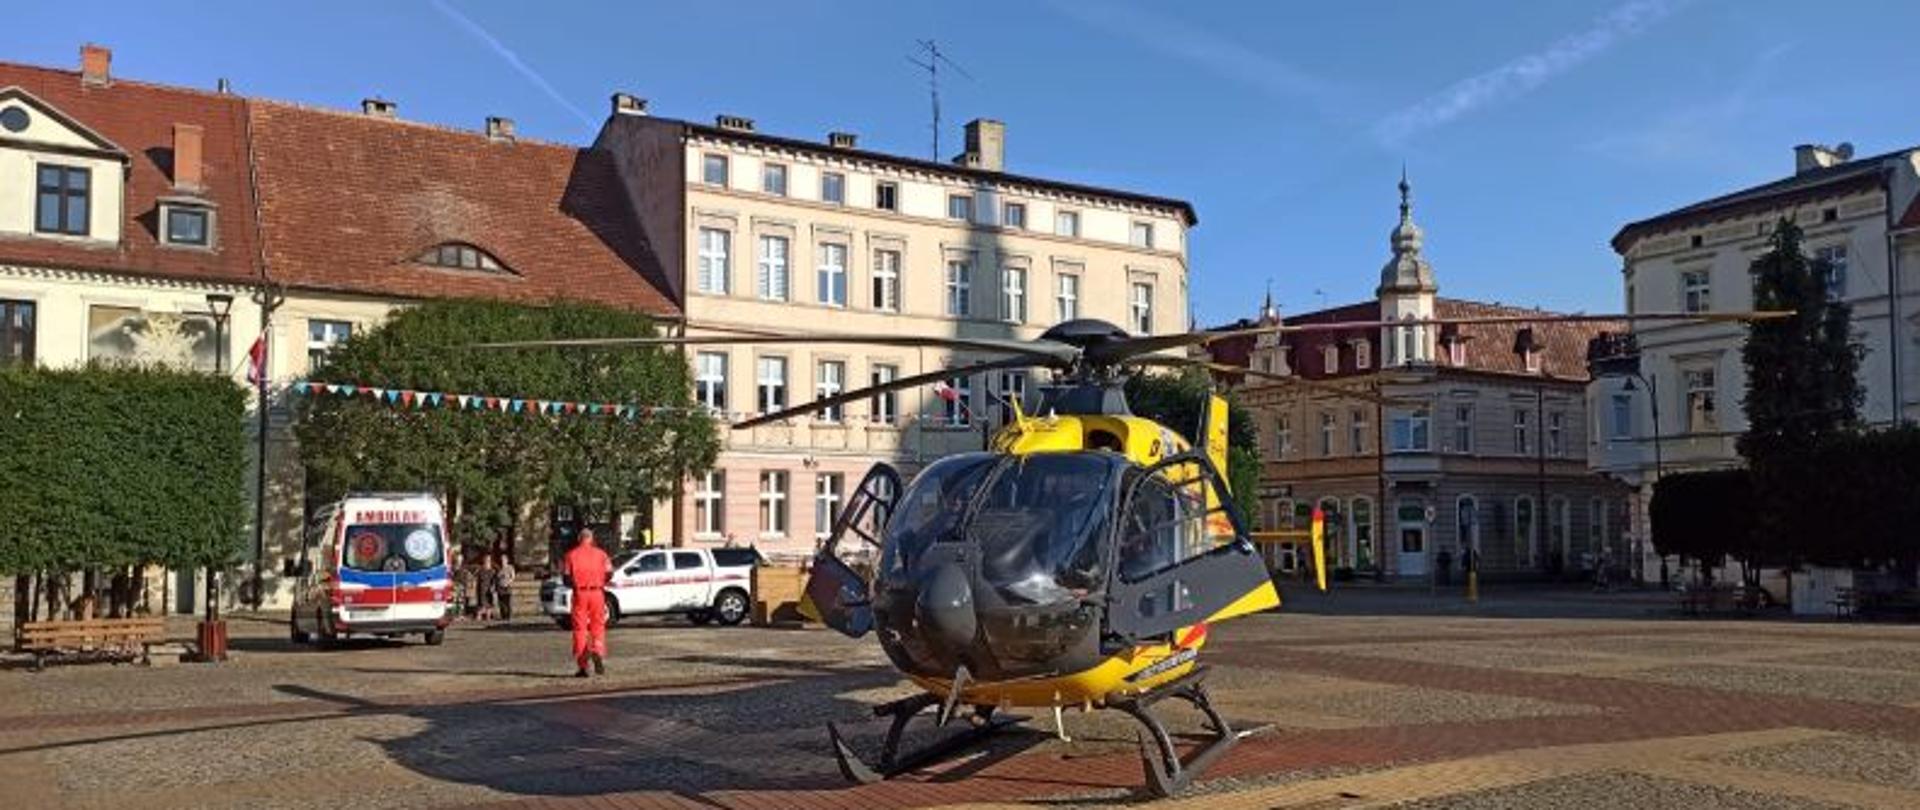 Centralny punkt zdjęcia stanowi helikopter . Helikopter koloru żółtego. Stoi na środku placu w centrum miasta. W oddali kościół a po bokach kamienice. Tło stanowi niebieski niebo.